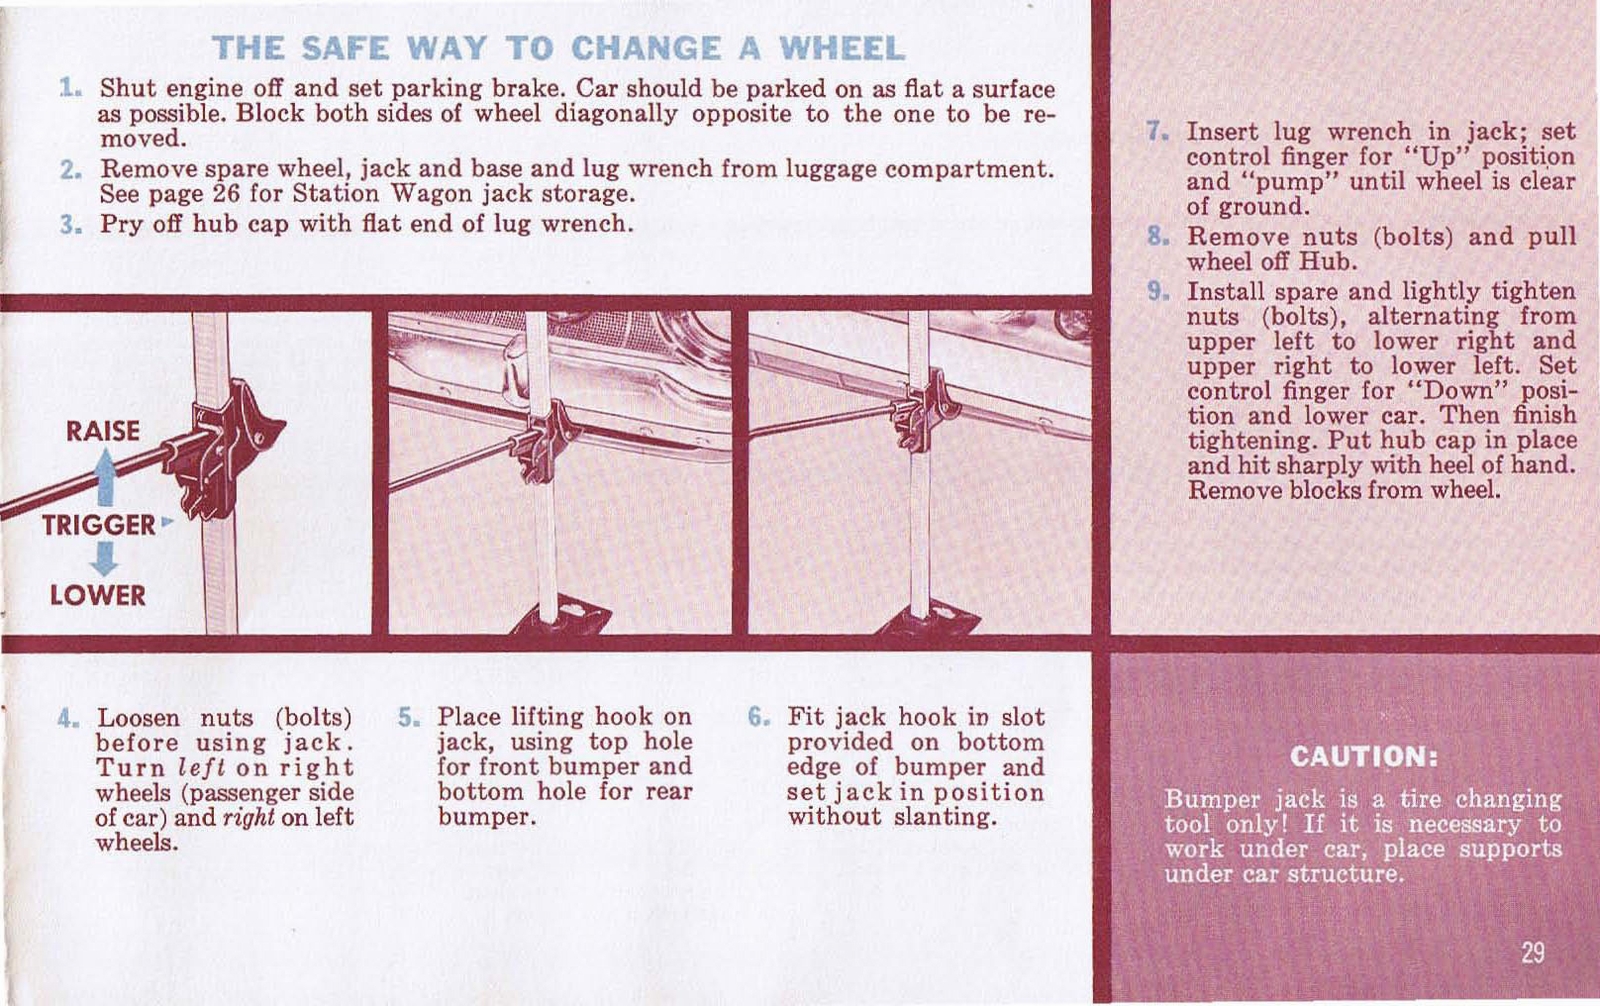 n_1962 Plymouth Owners Manual-29.jpg